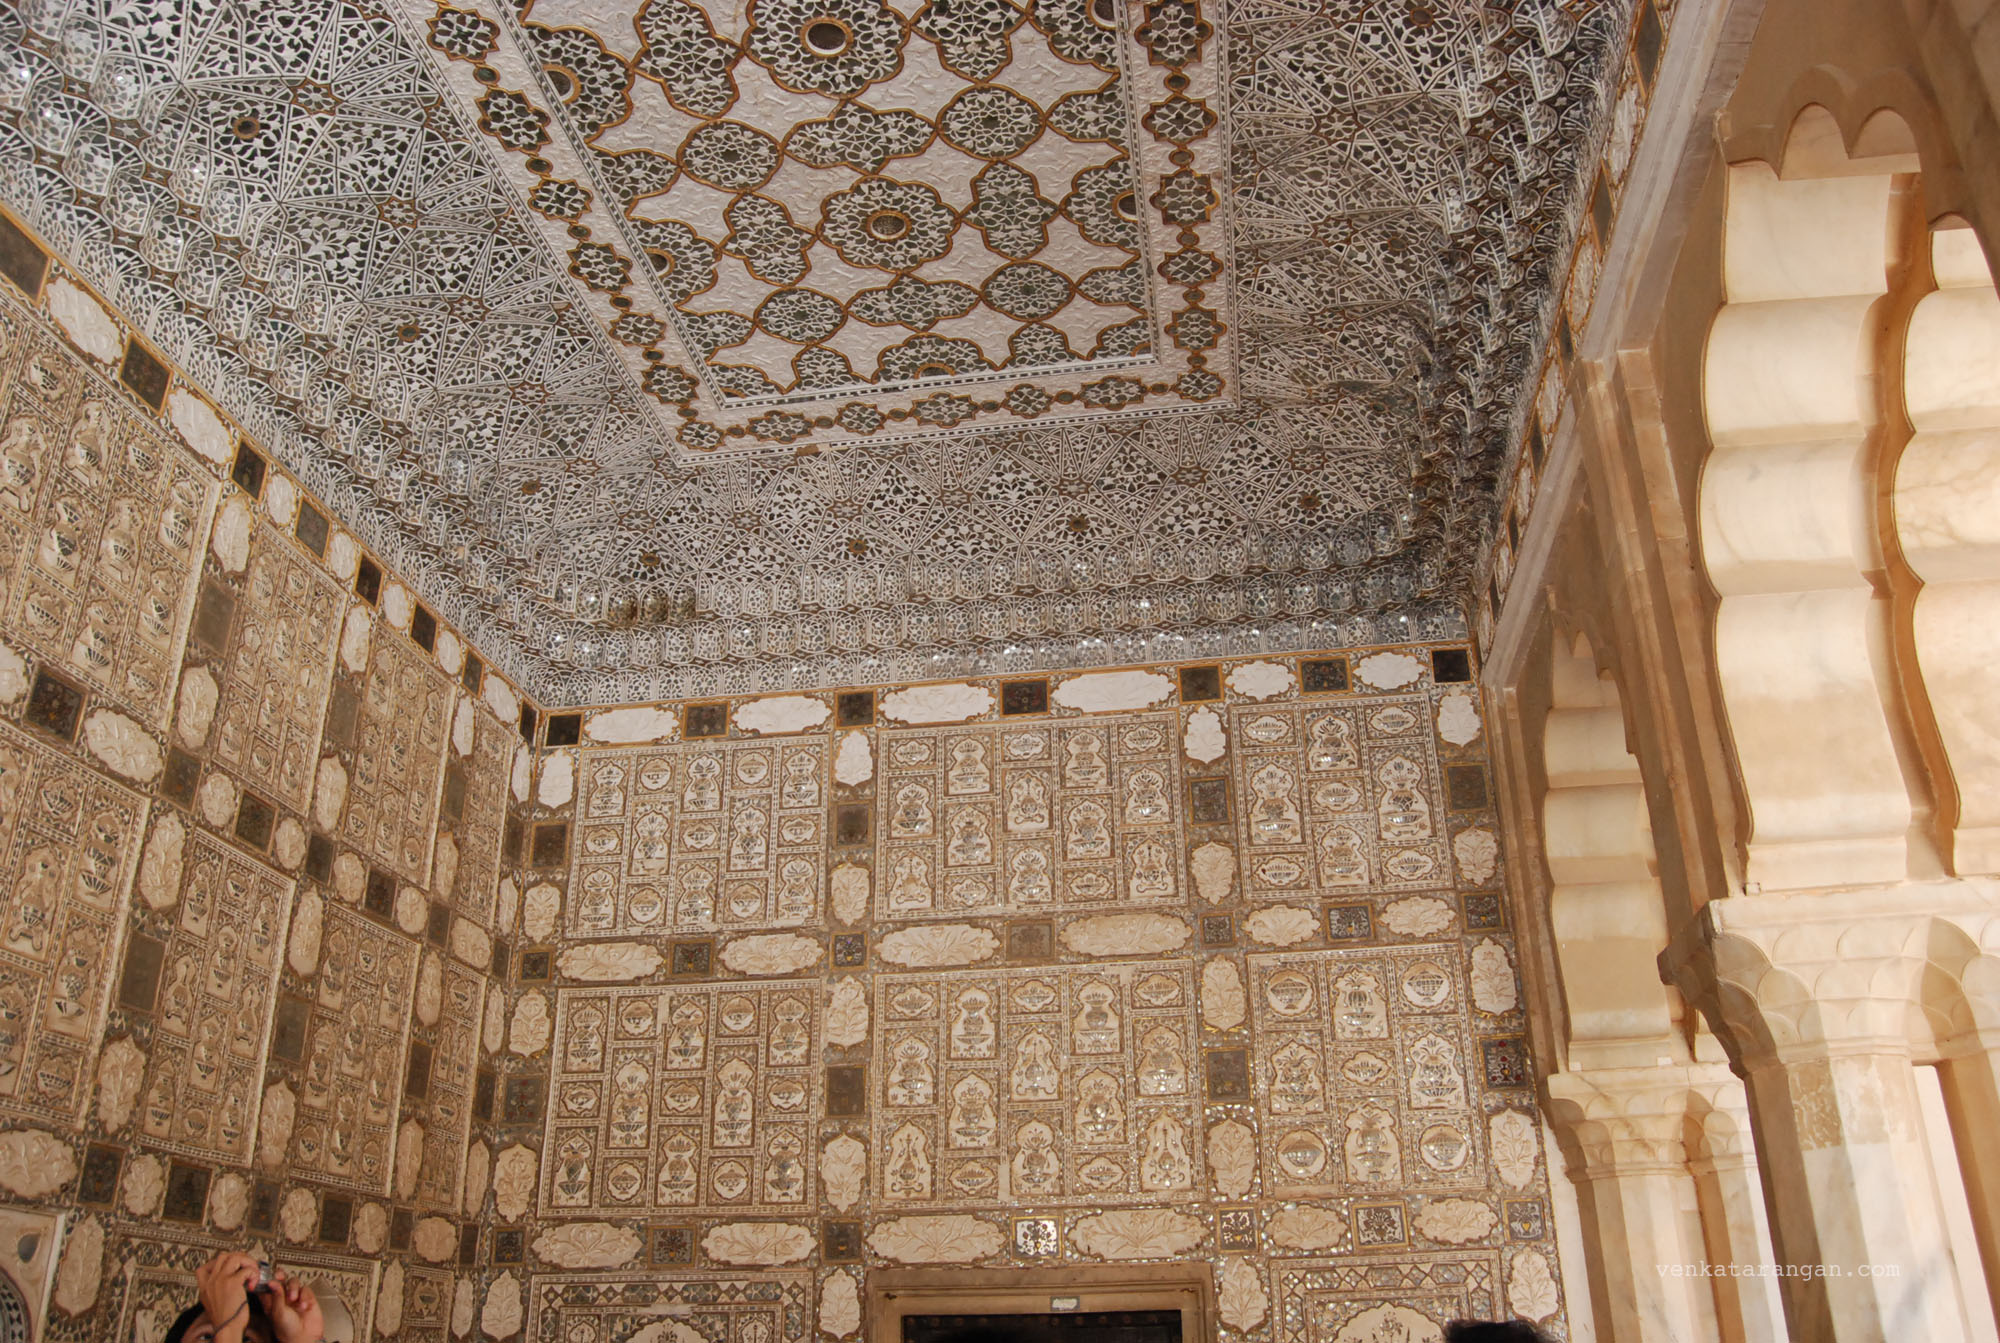 Sheesh Mahal (mirror palace)